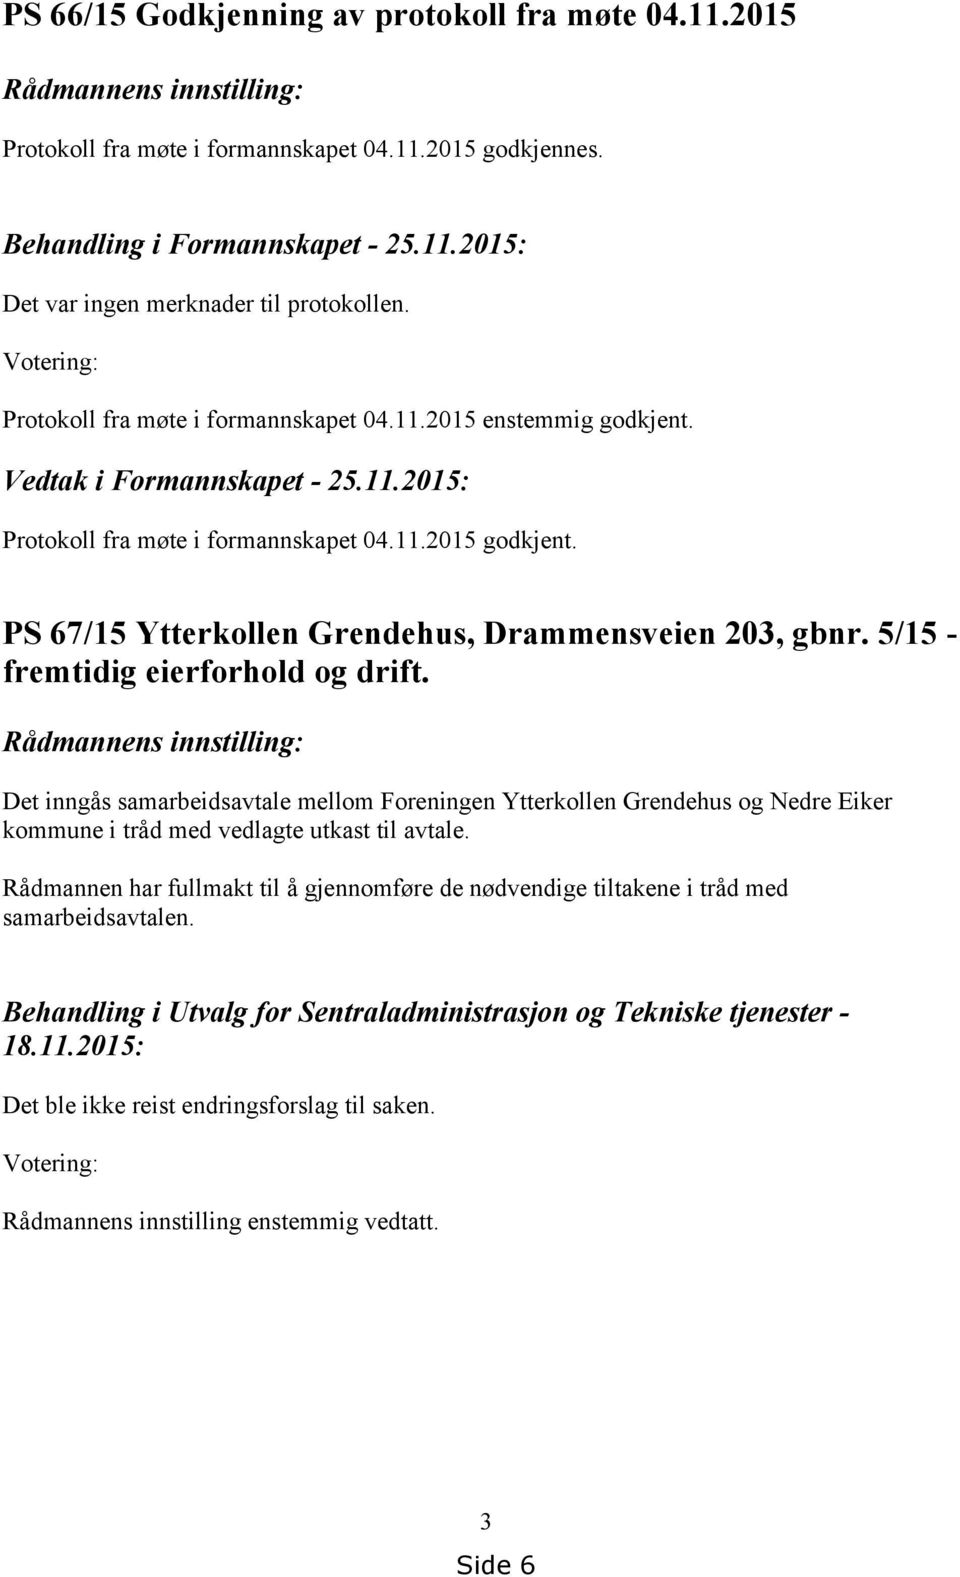 PS 67/15 Ytterkollen Grendehus, Drammensveien 203, gbnr. 5/15 - fremtidig eierforhold og drift.